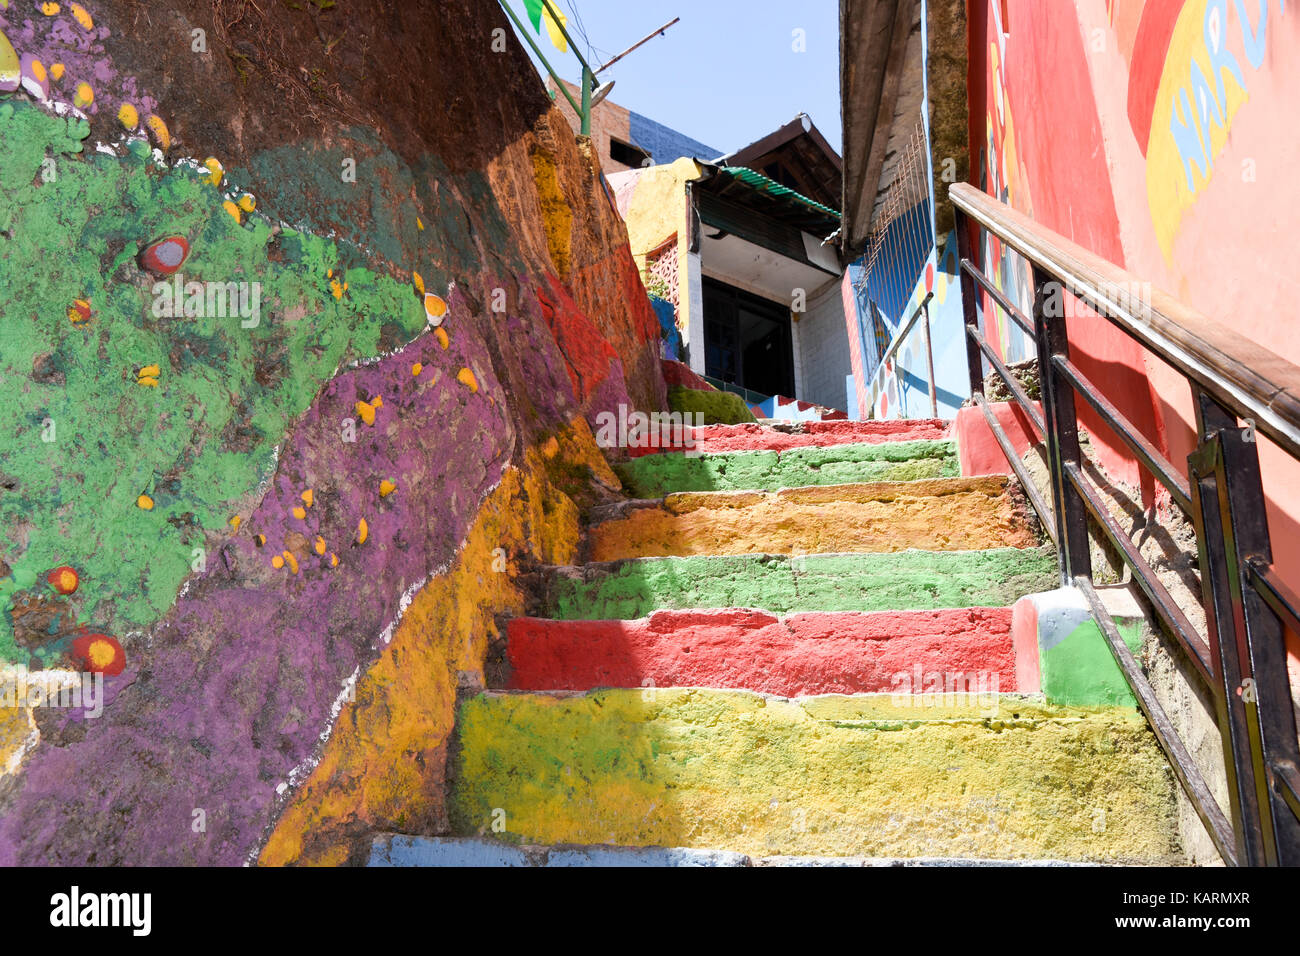 Escalier peint au rainbow village de Semerang, Indonésie Banque D'Images